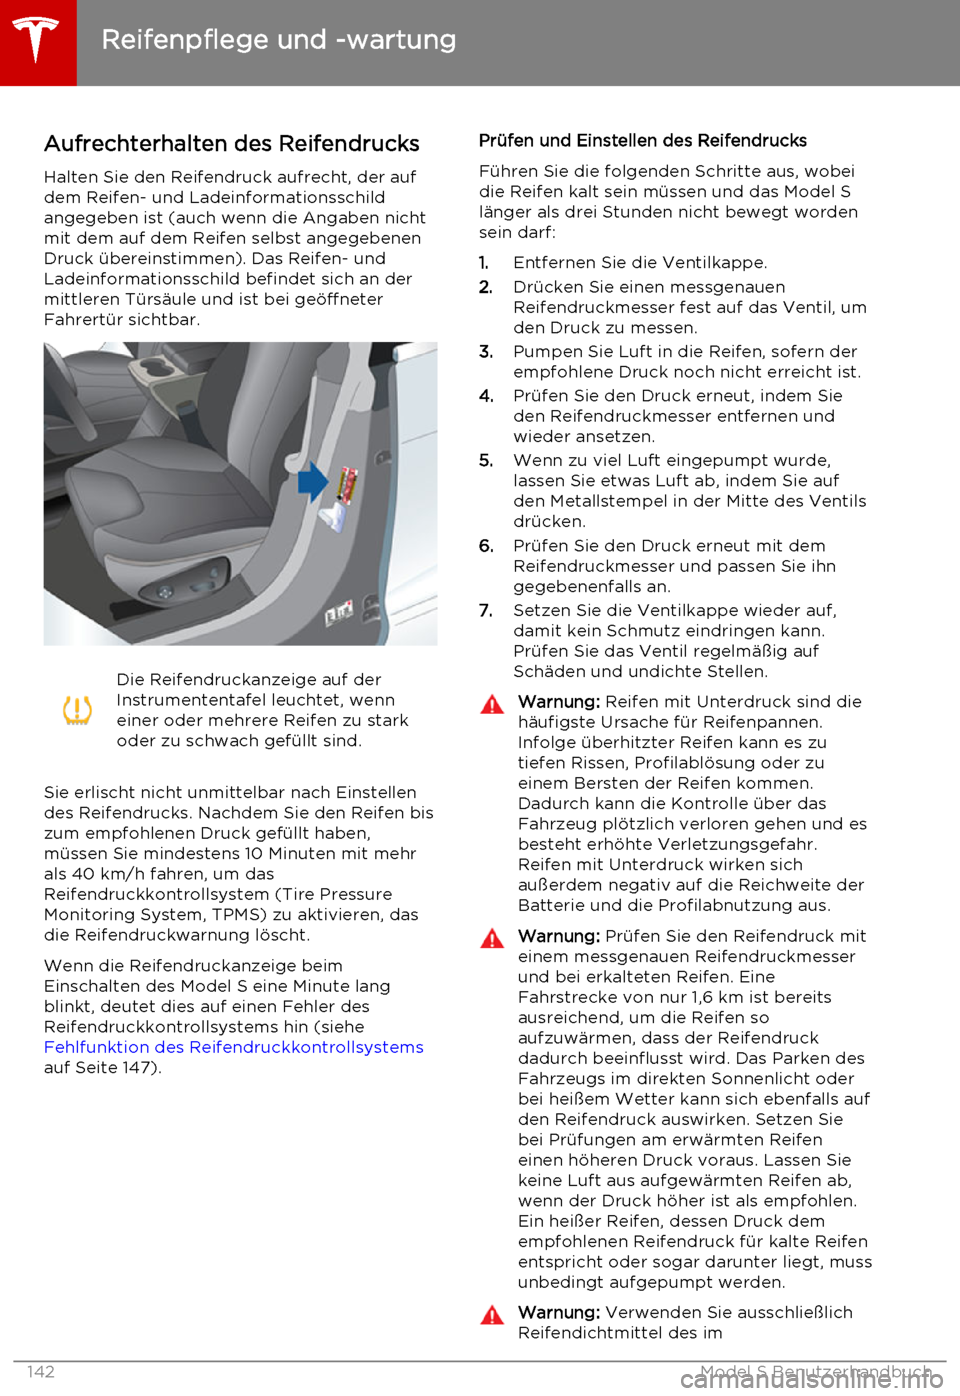 TESLA MODEL S 2015  Betriebsanleitung (in German) Aufrechterhalten des Reifendrucks
Halten Sie den Reifendruck aufrecht, der auf
dem Reifen- und Ladeinformationsschild
angegeben ist (auch wenn die Angaben nicht
mit dem auf dem Reifen selbst angegeben